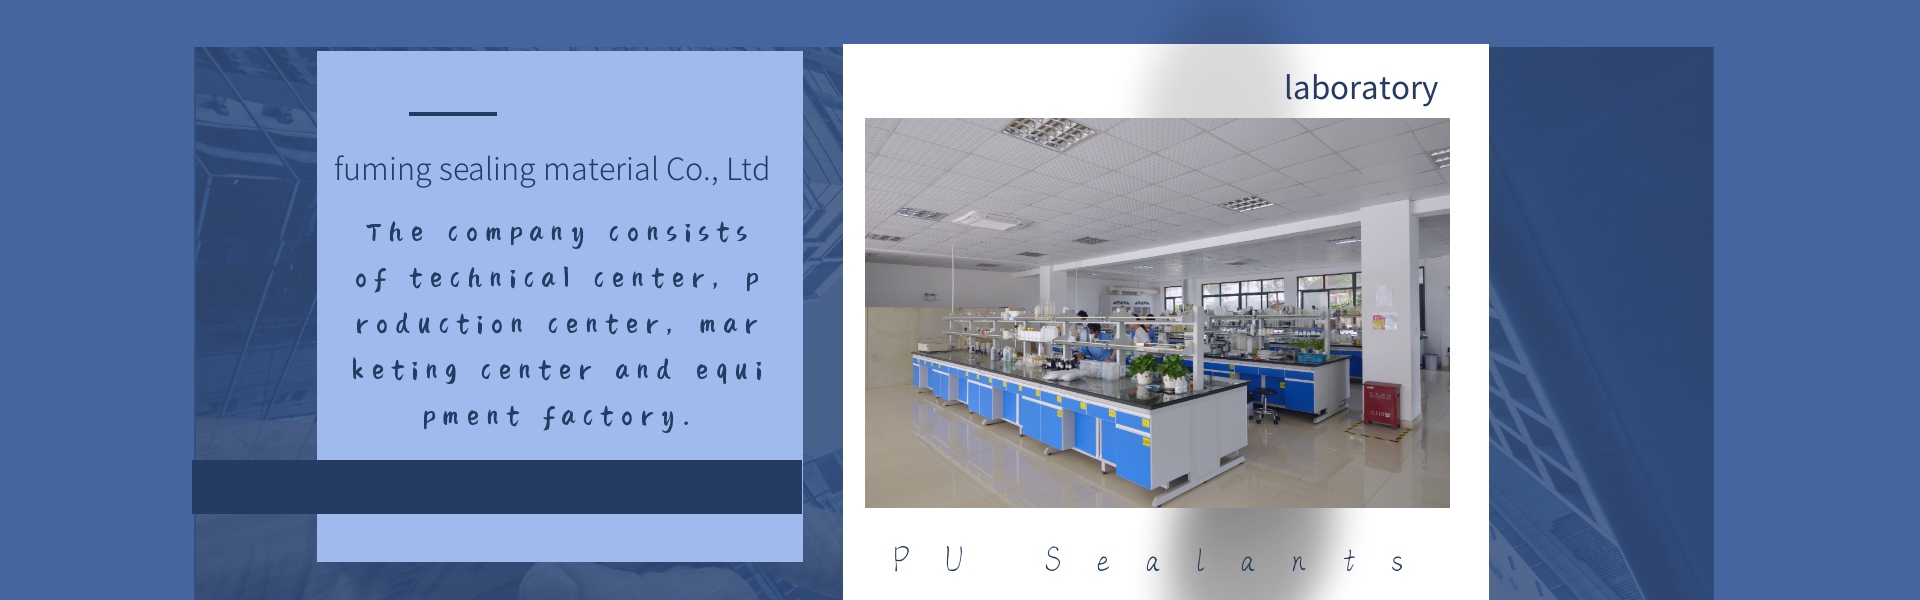 電子ポッティング接着剤、PUシーラント、フィルターシーラント,Dongguan fuming sealing material Co., Ltd